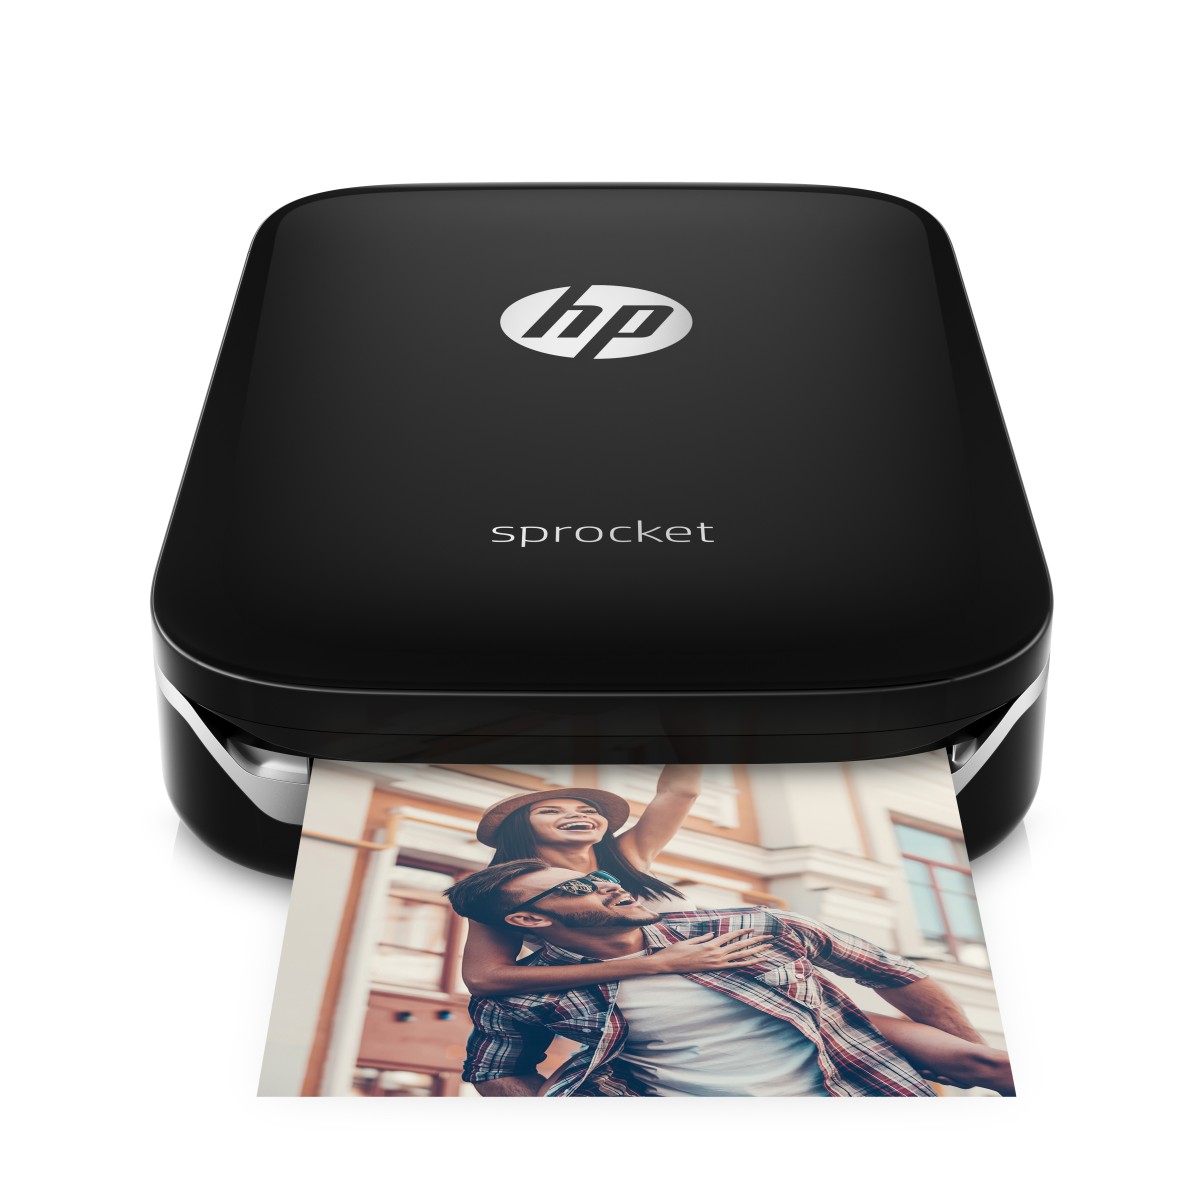 Fotografická tlačiareň HP Sprocket - čierna (Z3Z92A)